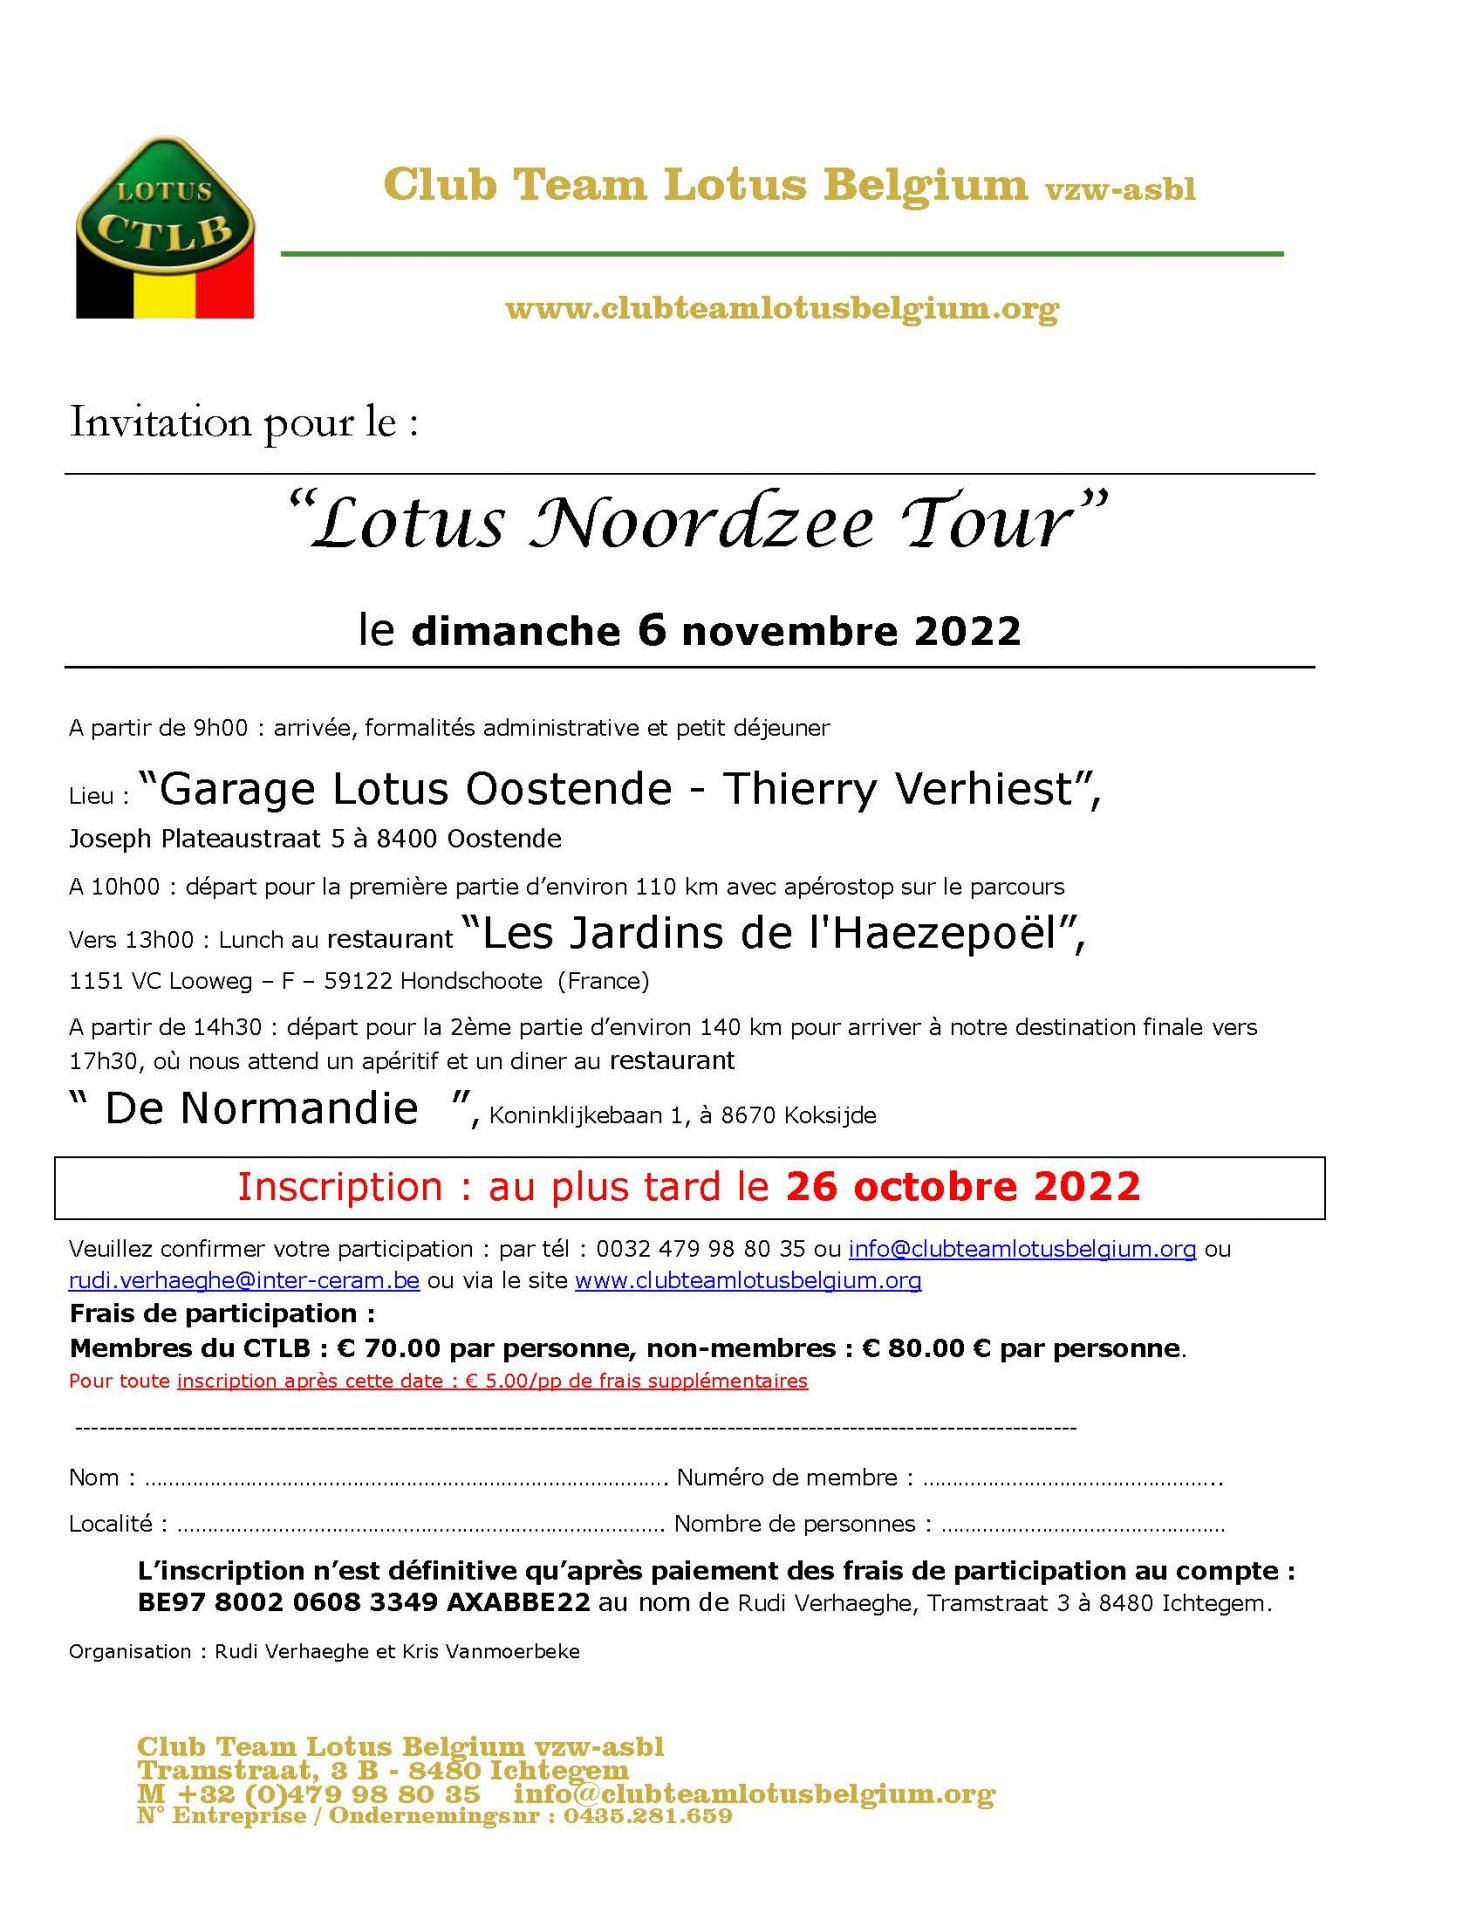 Invitation lotus noordzee tour